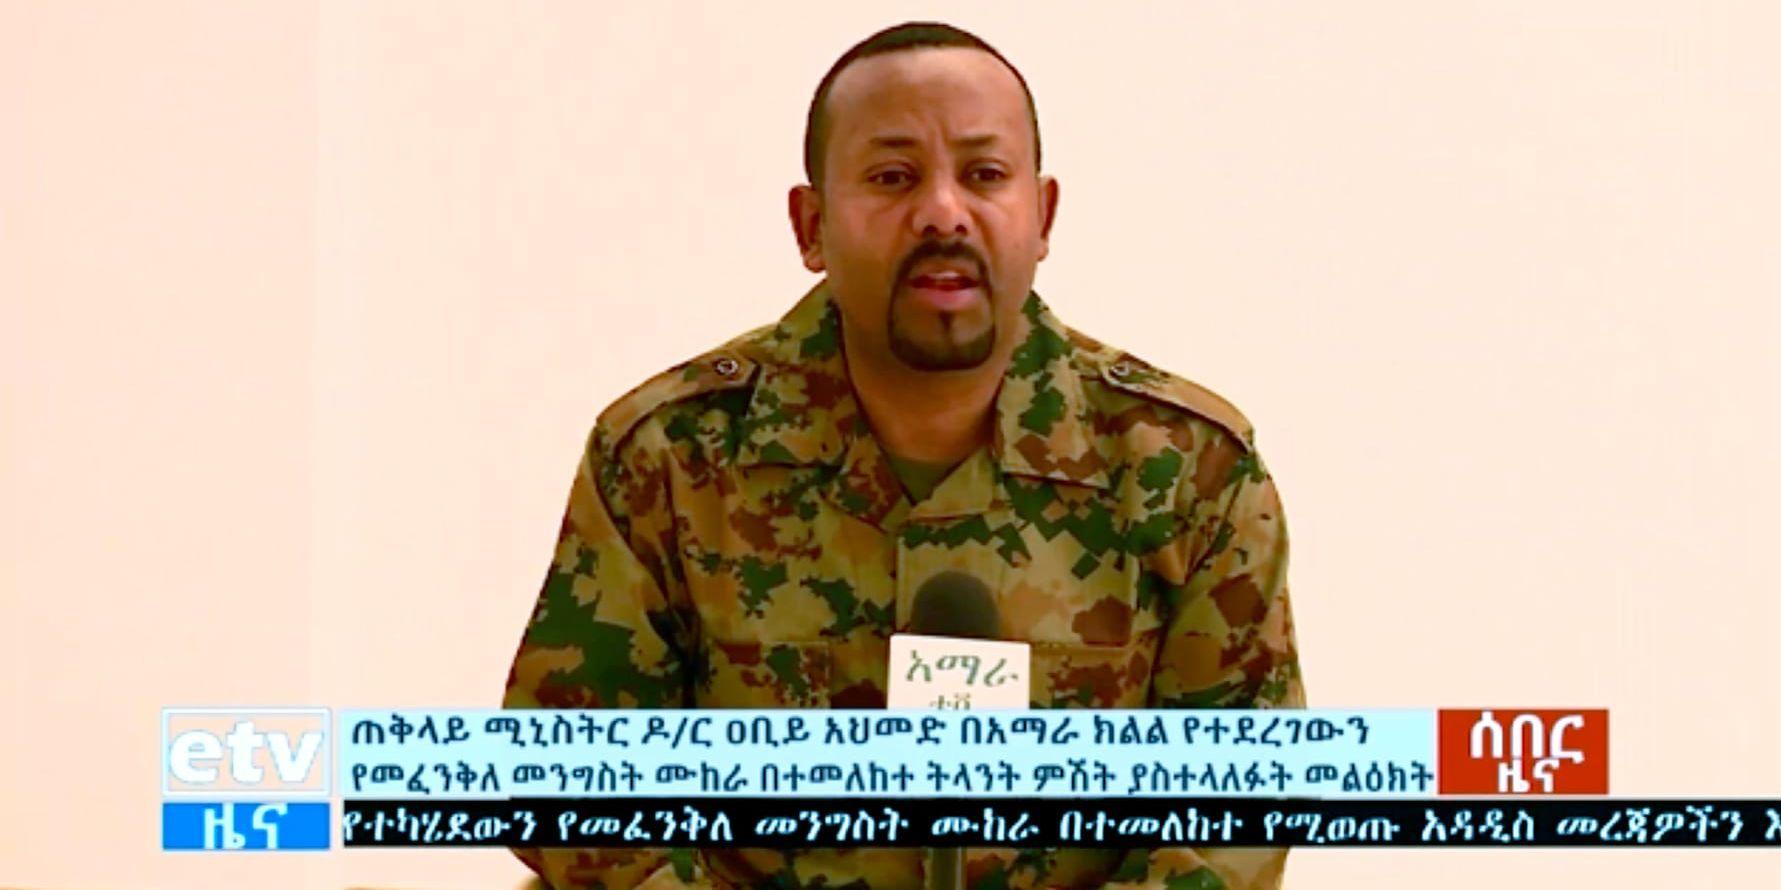 Etiopiens premiärminister Abiy Ahmed berättar om kuppförsöket i etiopisk tv.